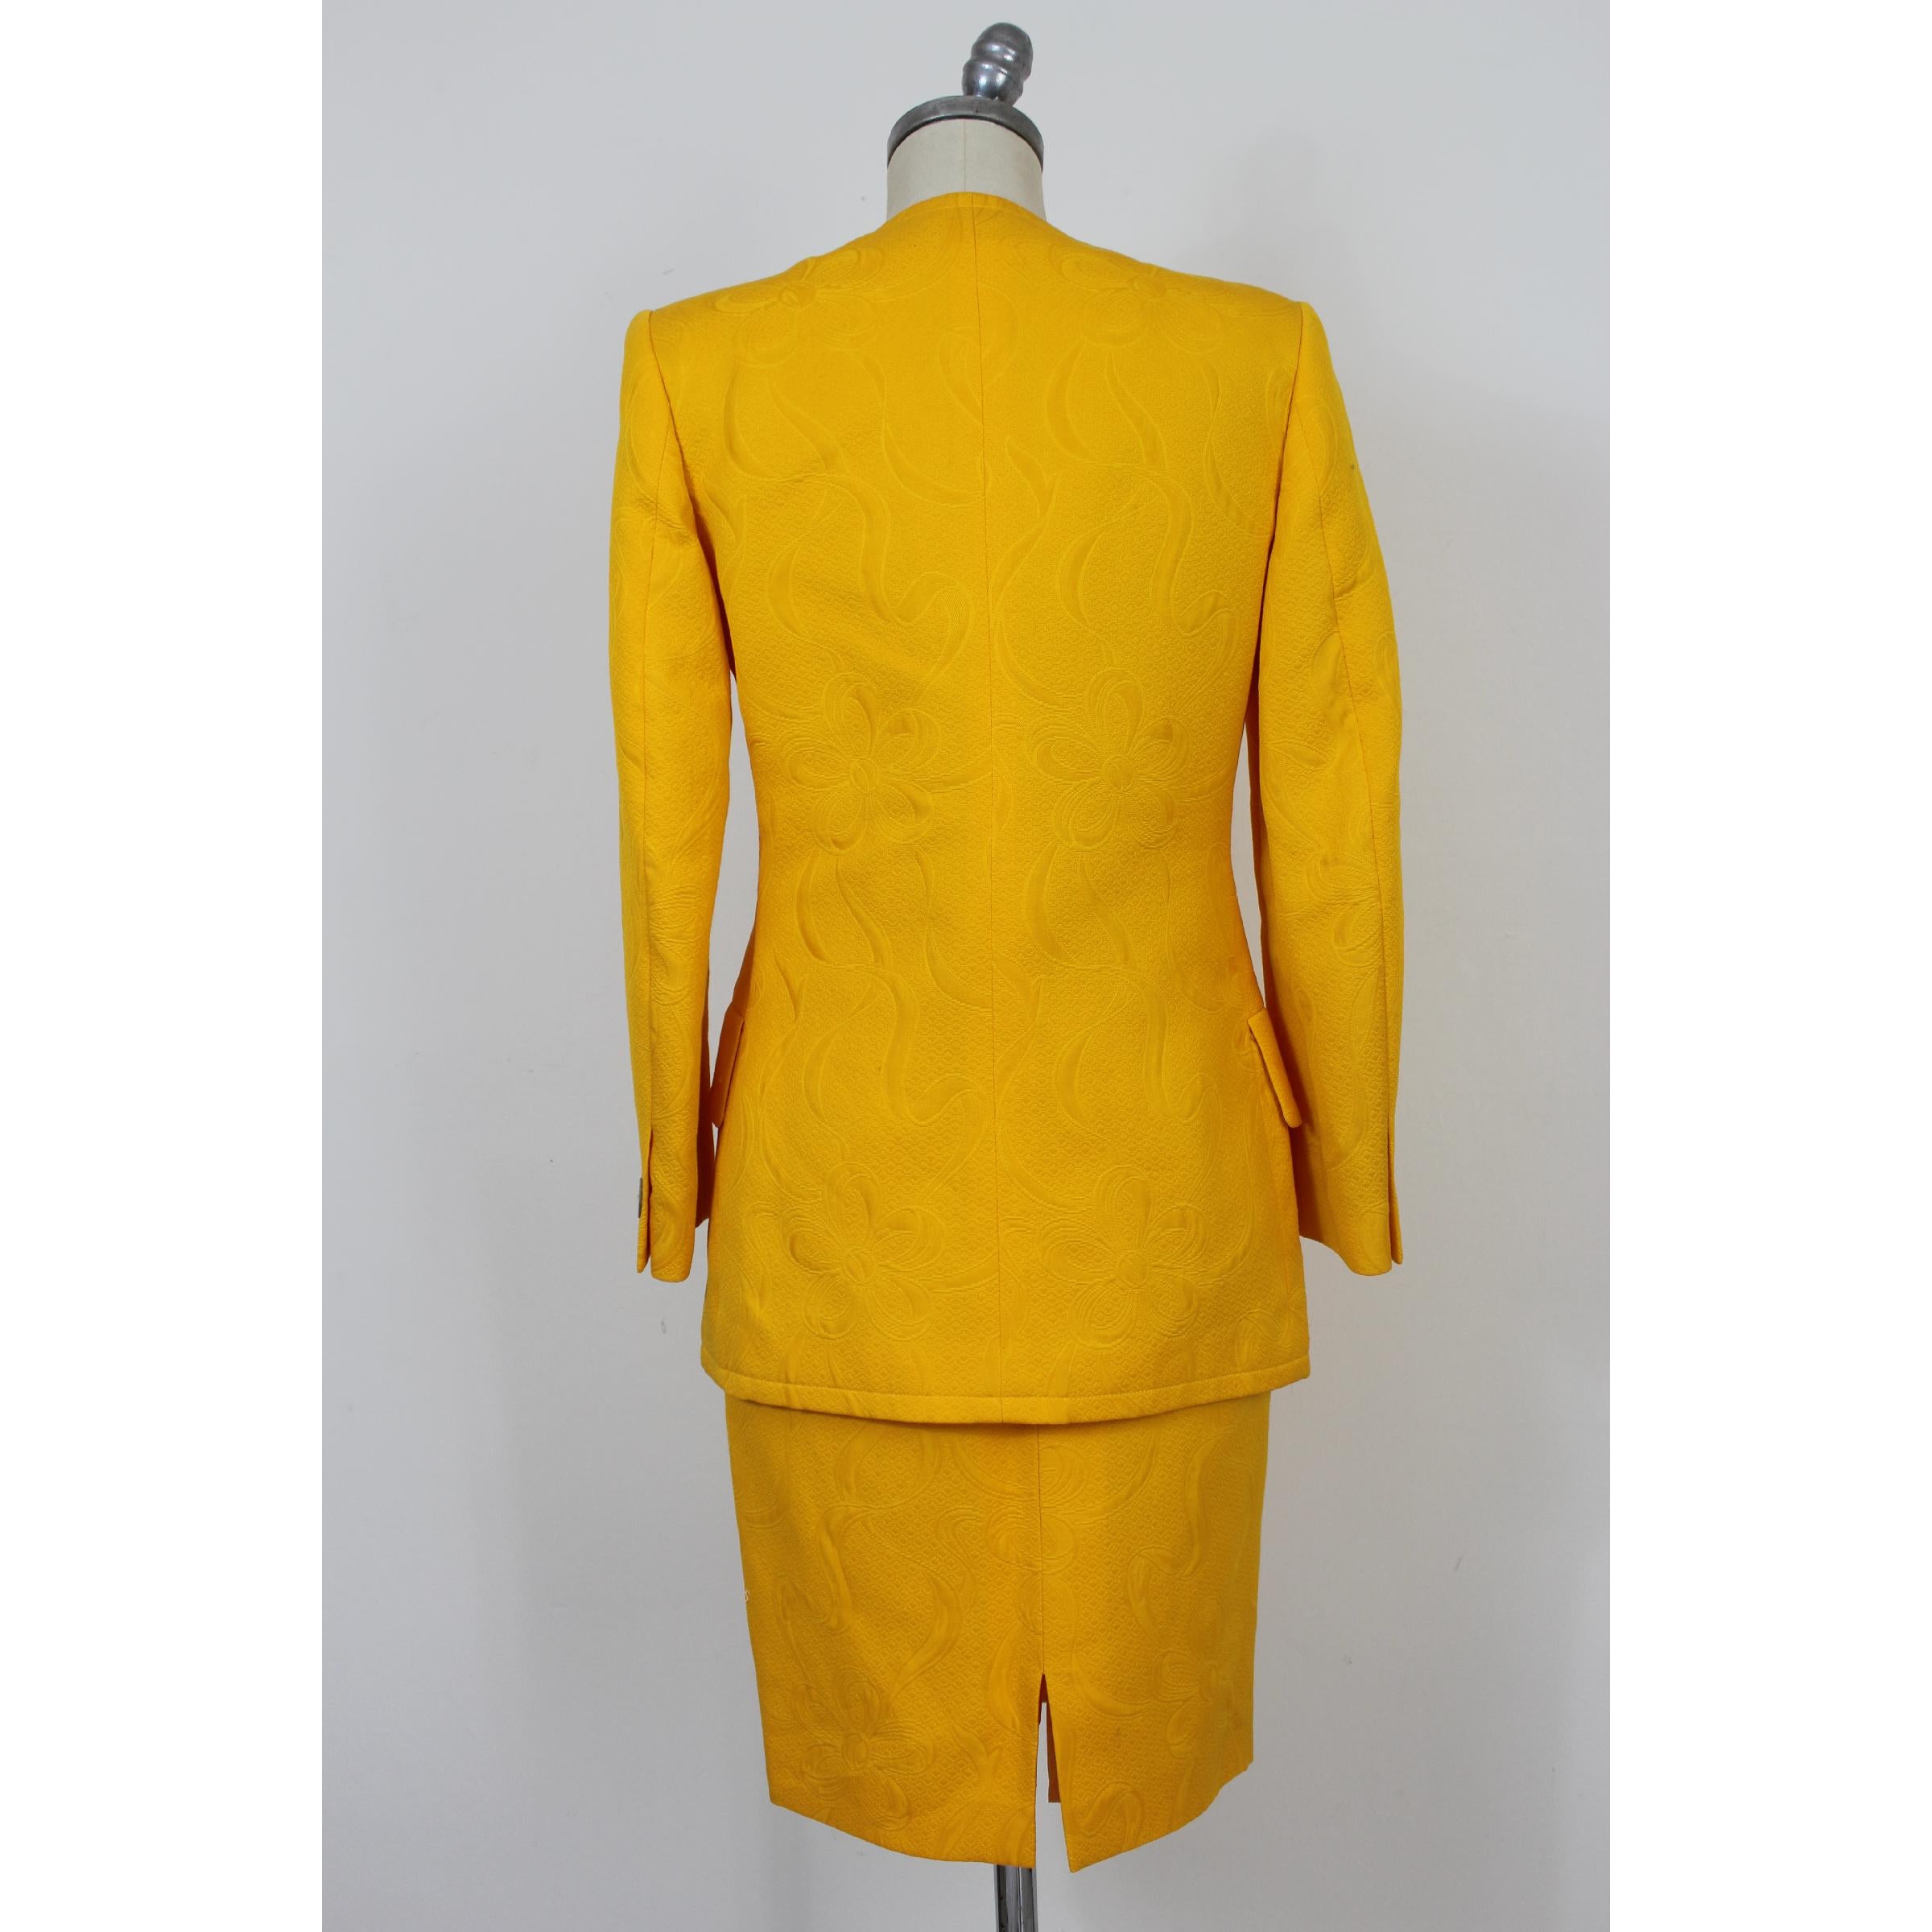 Vintage 70s Rock Anzug Kleid. Jacke und Rock, 100% Baumwolle, gelb mit damastartigen Blumenmustern. Hergestellt in Italien. Neu mit Tag, gibt es einige kleine Flecken aufgrund der Zeit auf dem Kleid.

Größe: 42 It 8 Us 10 Uk

Schultern: 42